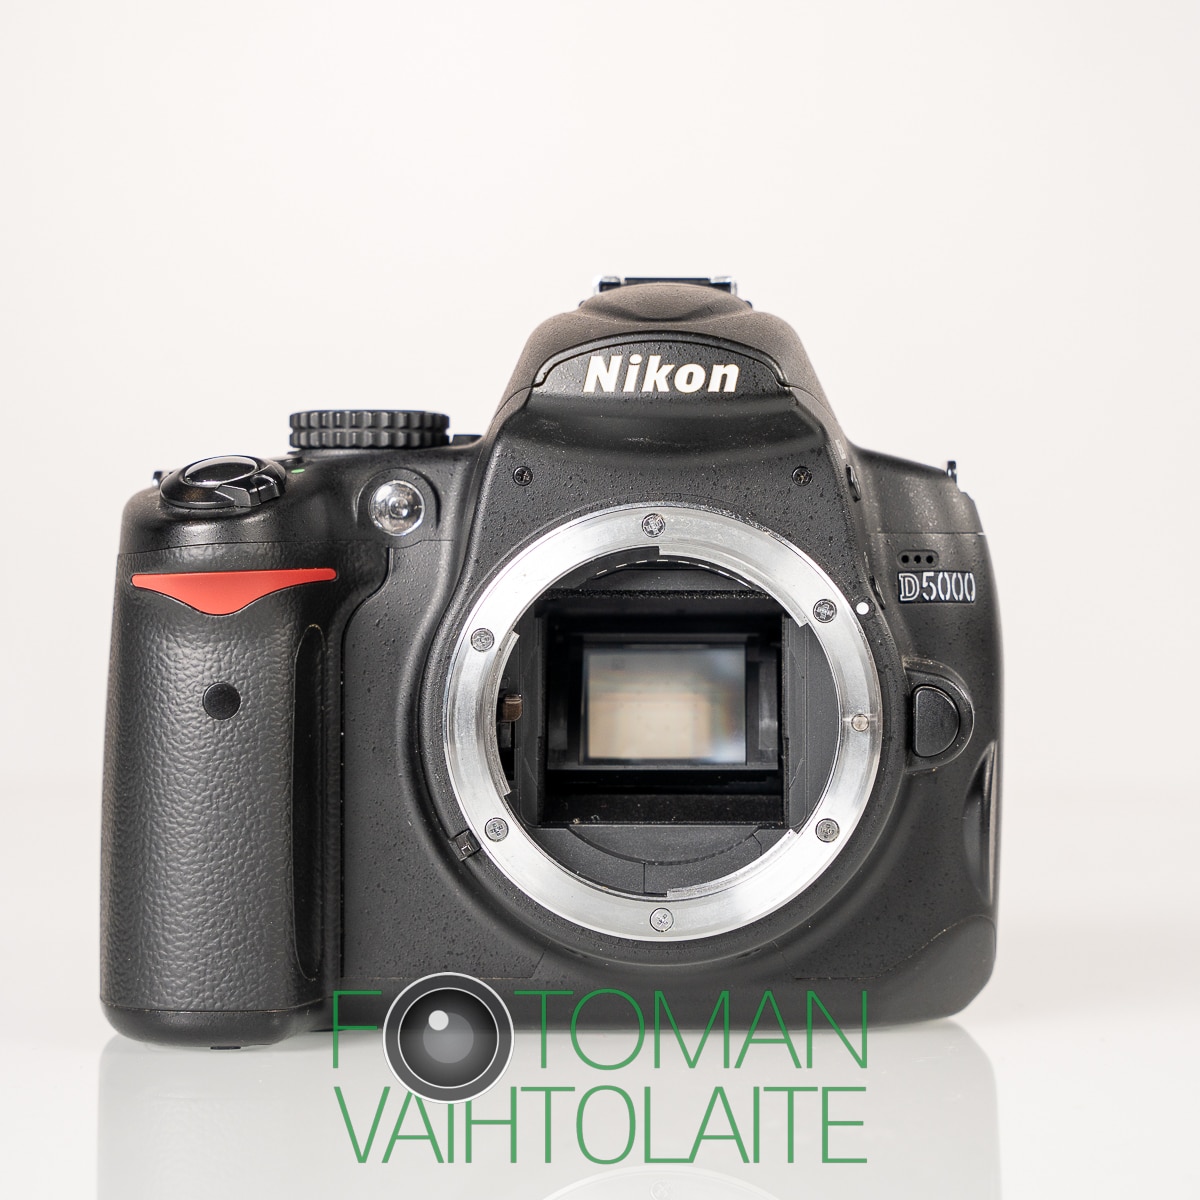 MYYTY Käytetty Nikon D5000 runko + AF-S 18-55mm DX VR Kit